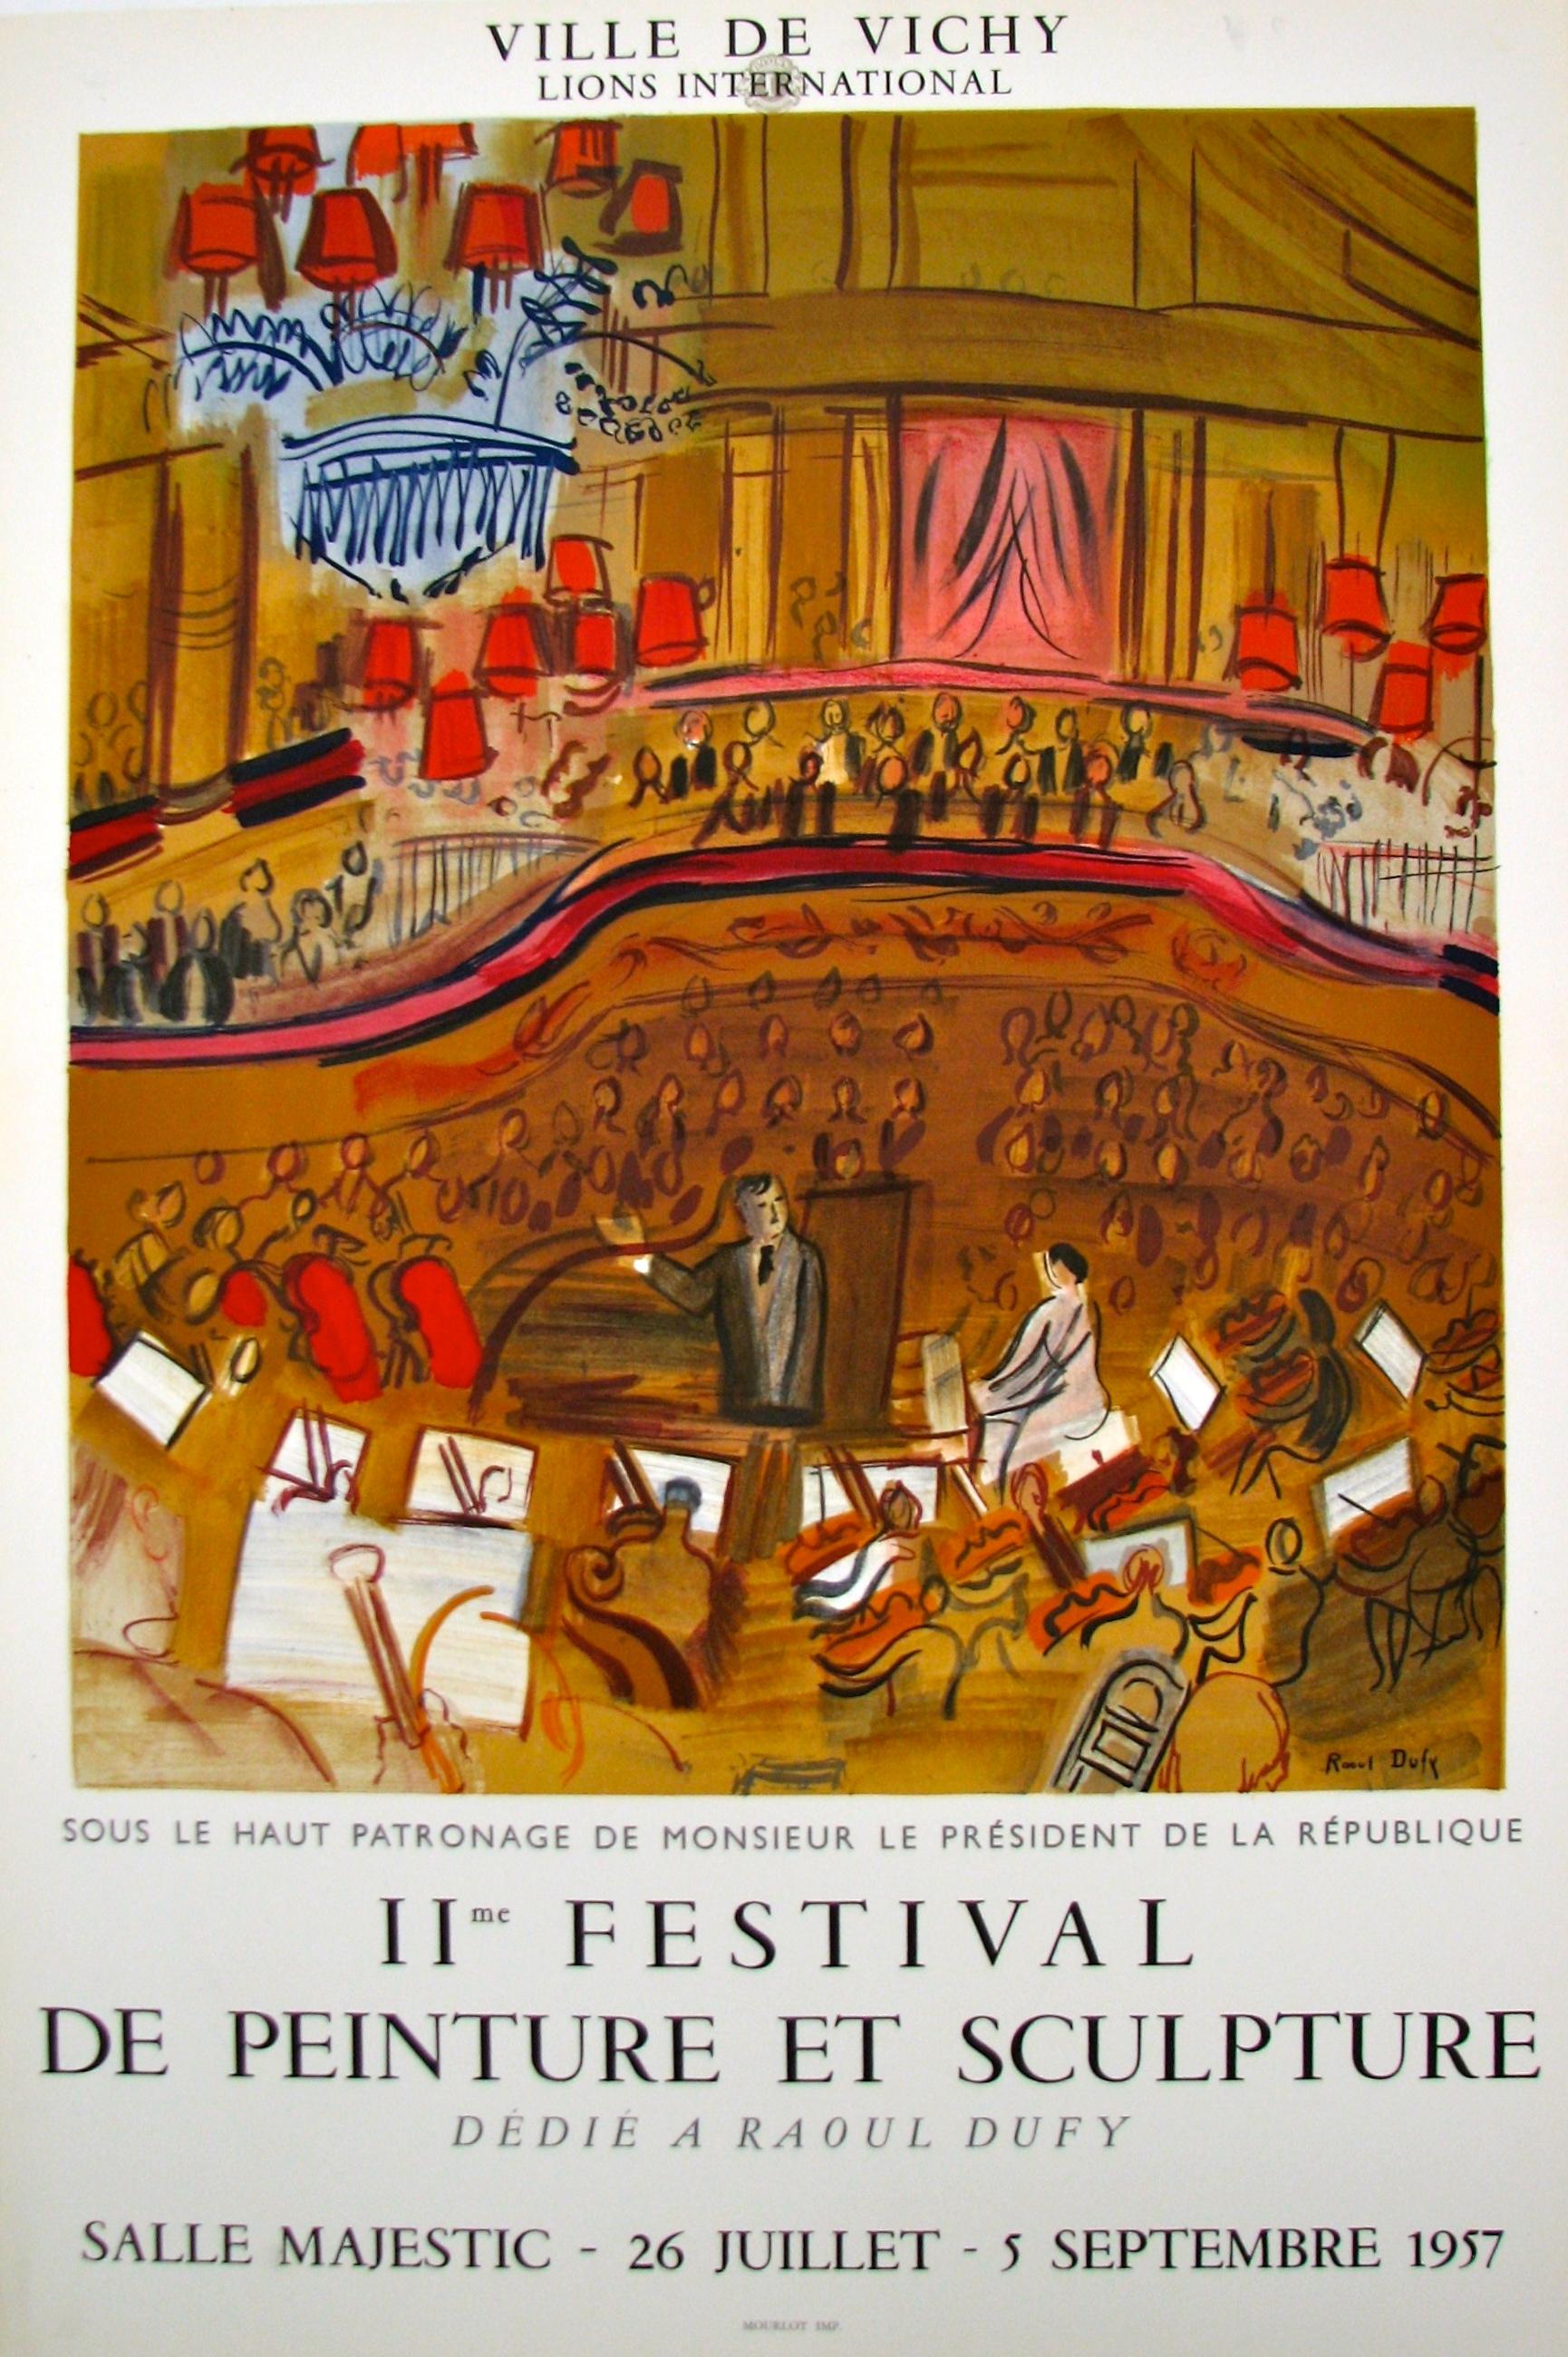 Le Grand Concert-II e Festival de Peinture et Sculpture (d'après) Raoul Dufy, 1957